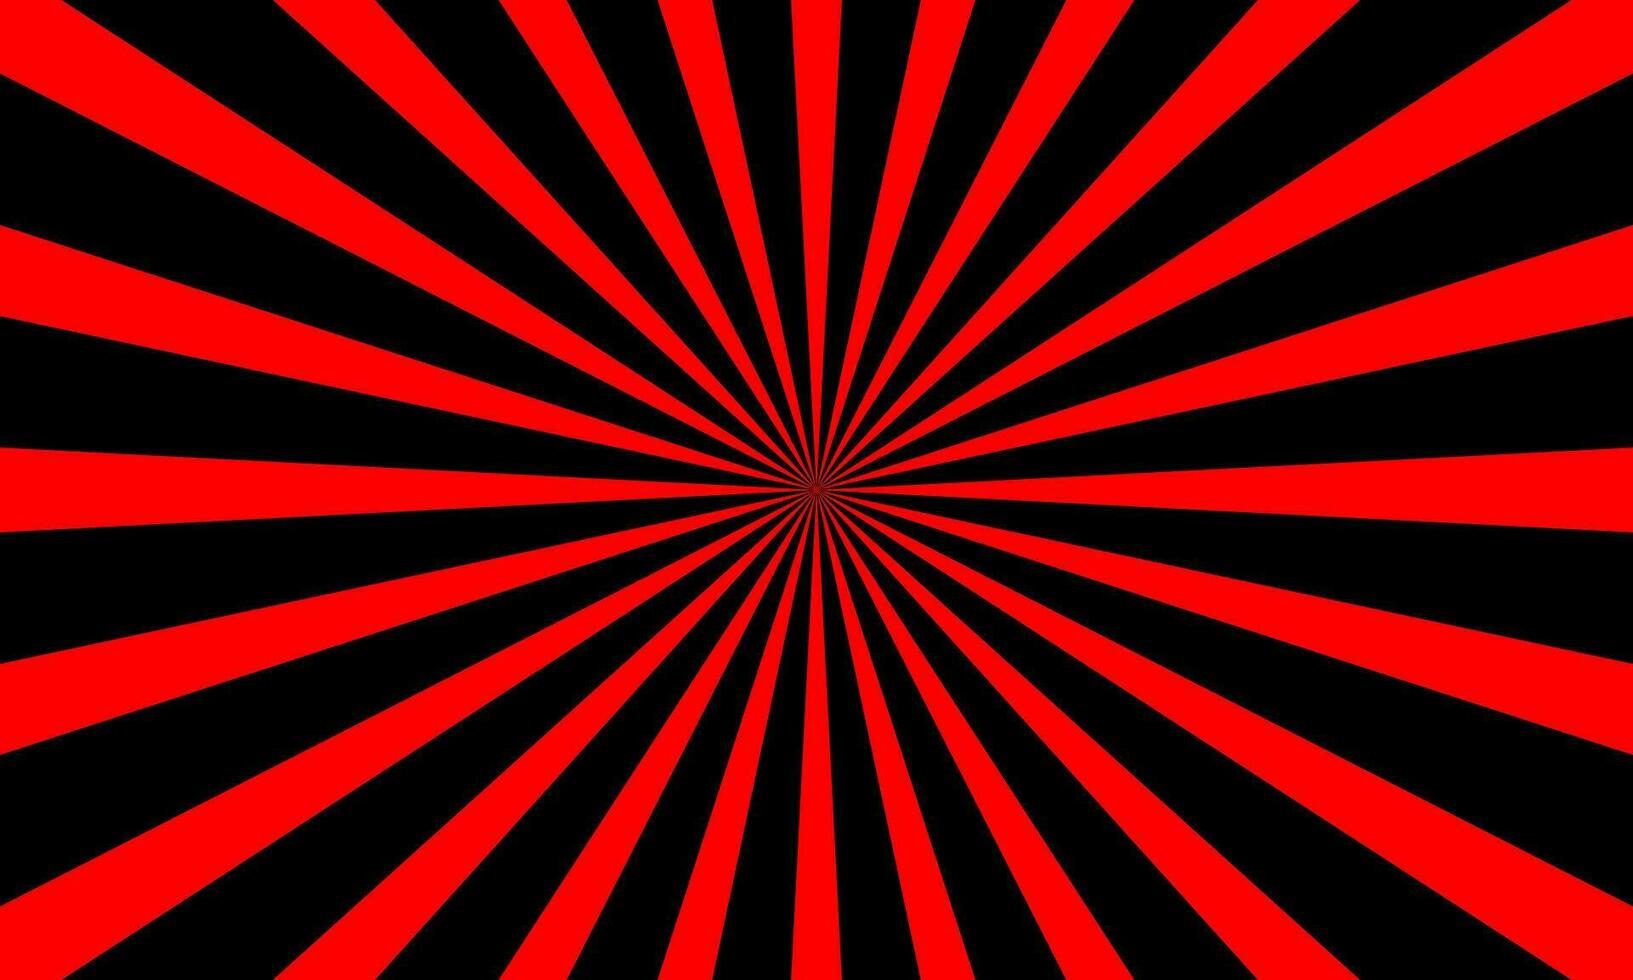 rojo y negro estallido estelar, radial, radiante líneas rayos de sol patrón, vector ilustración